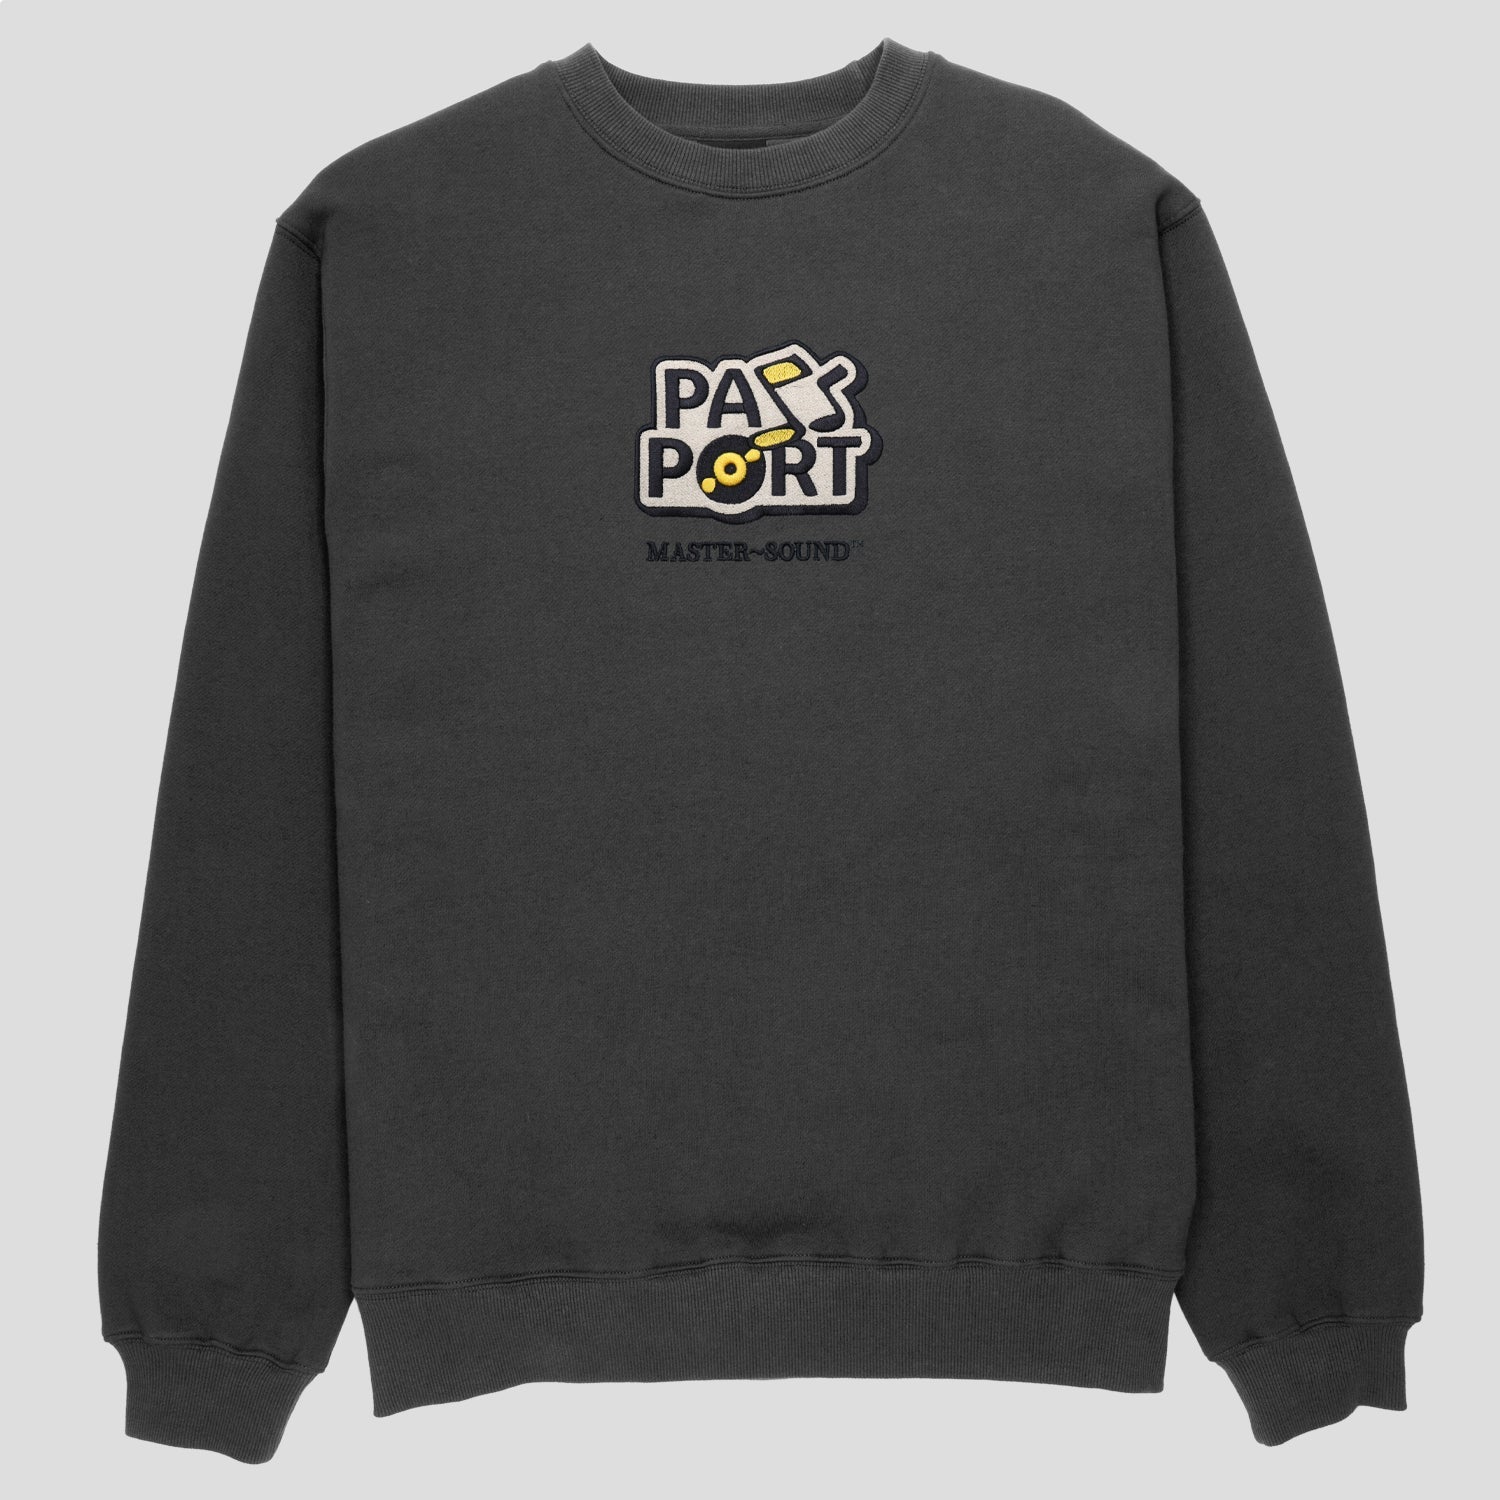 Pass~Port Master~Sounds Sweater - Tar